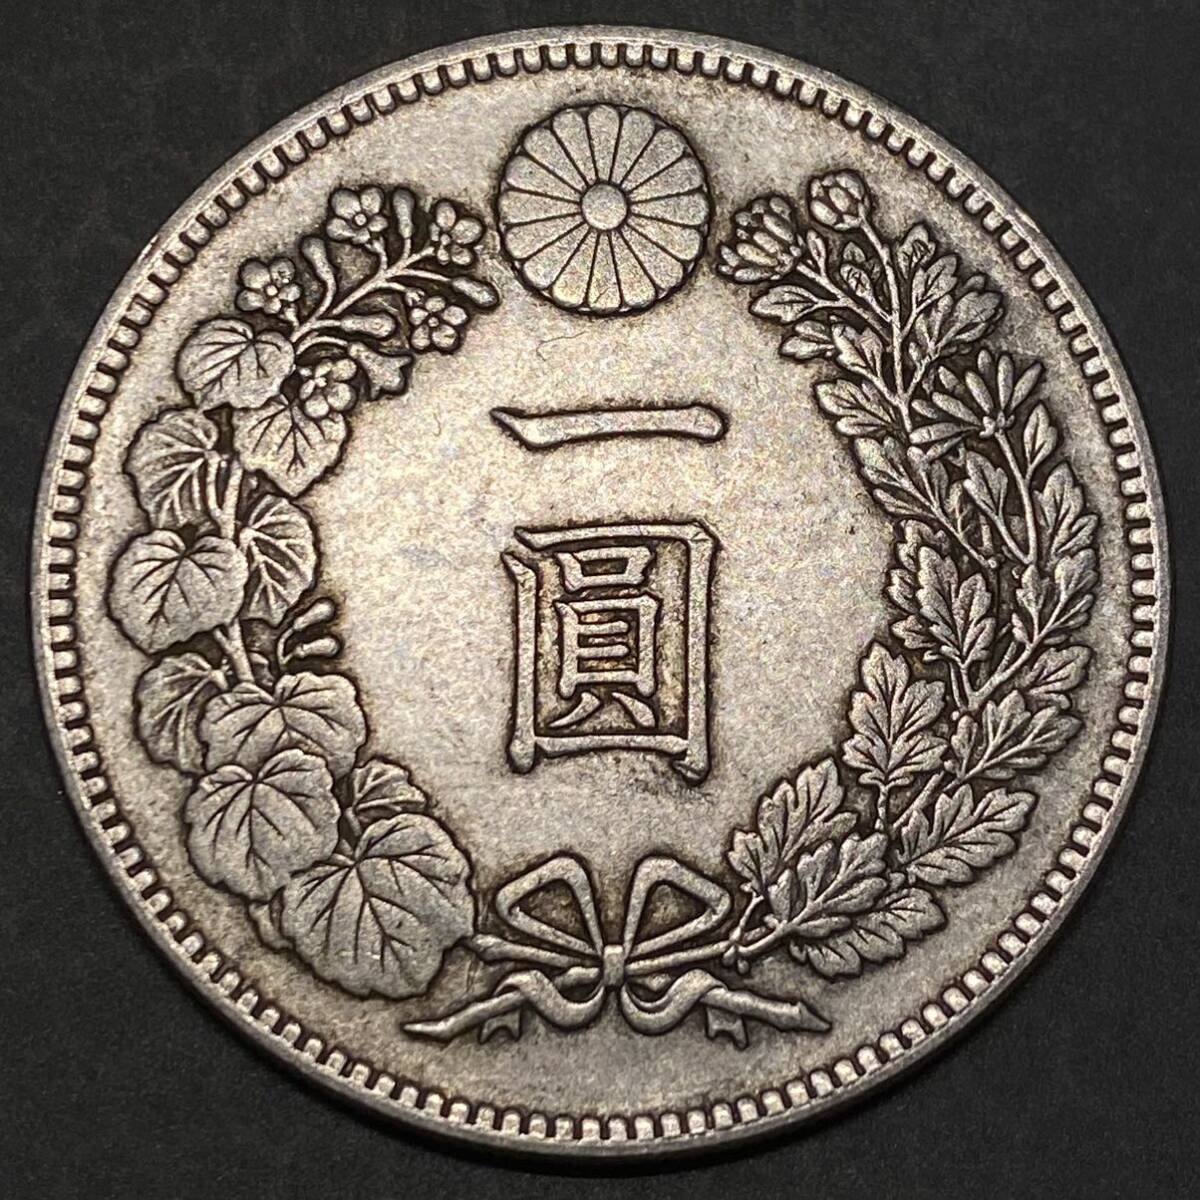 新1円銀貨 明治23年 大型 約26.33g 日本古銭 一圓 一円 銀貨 硬貨 貨幣 コインコレクション の画像1